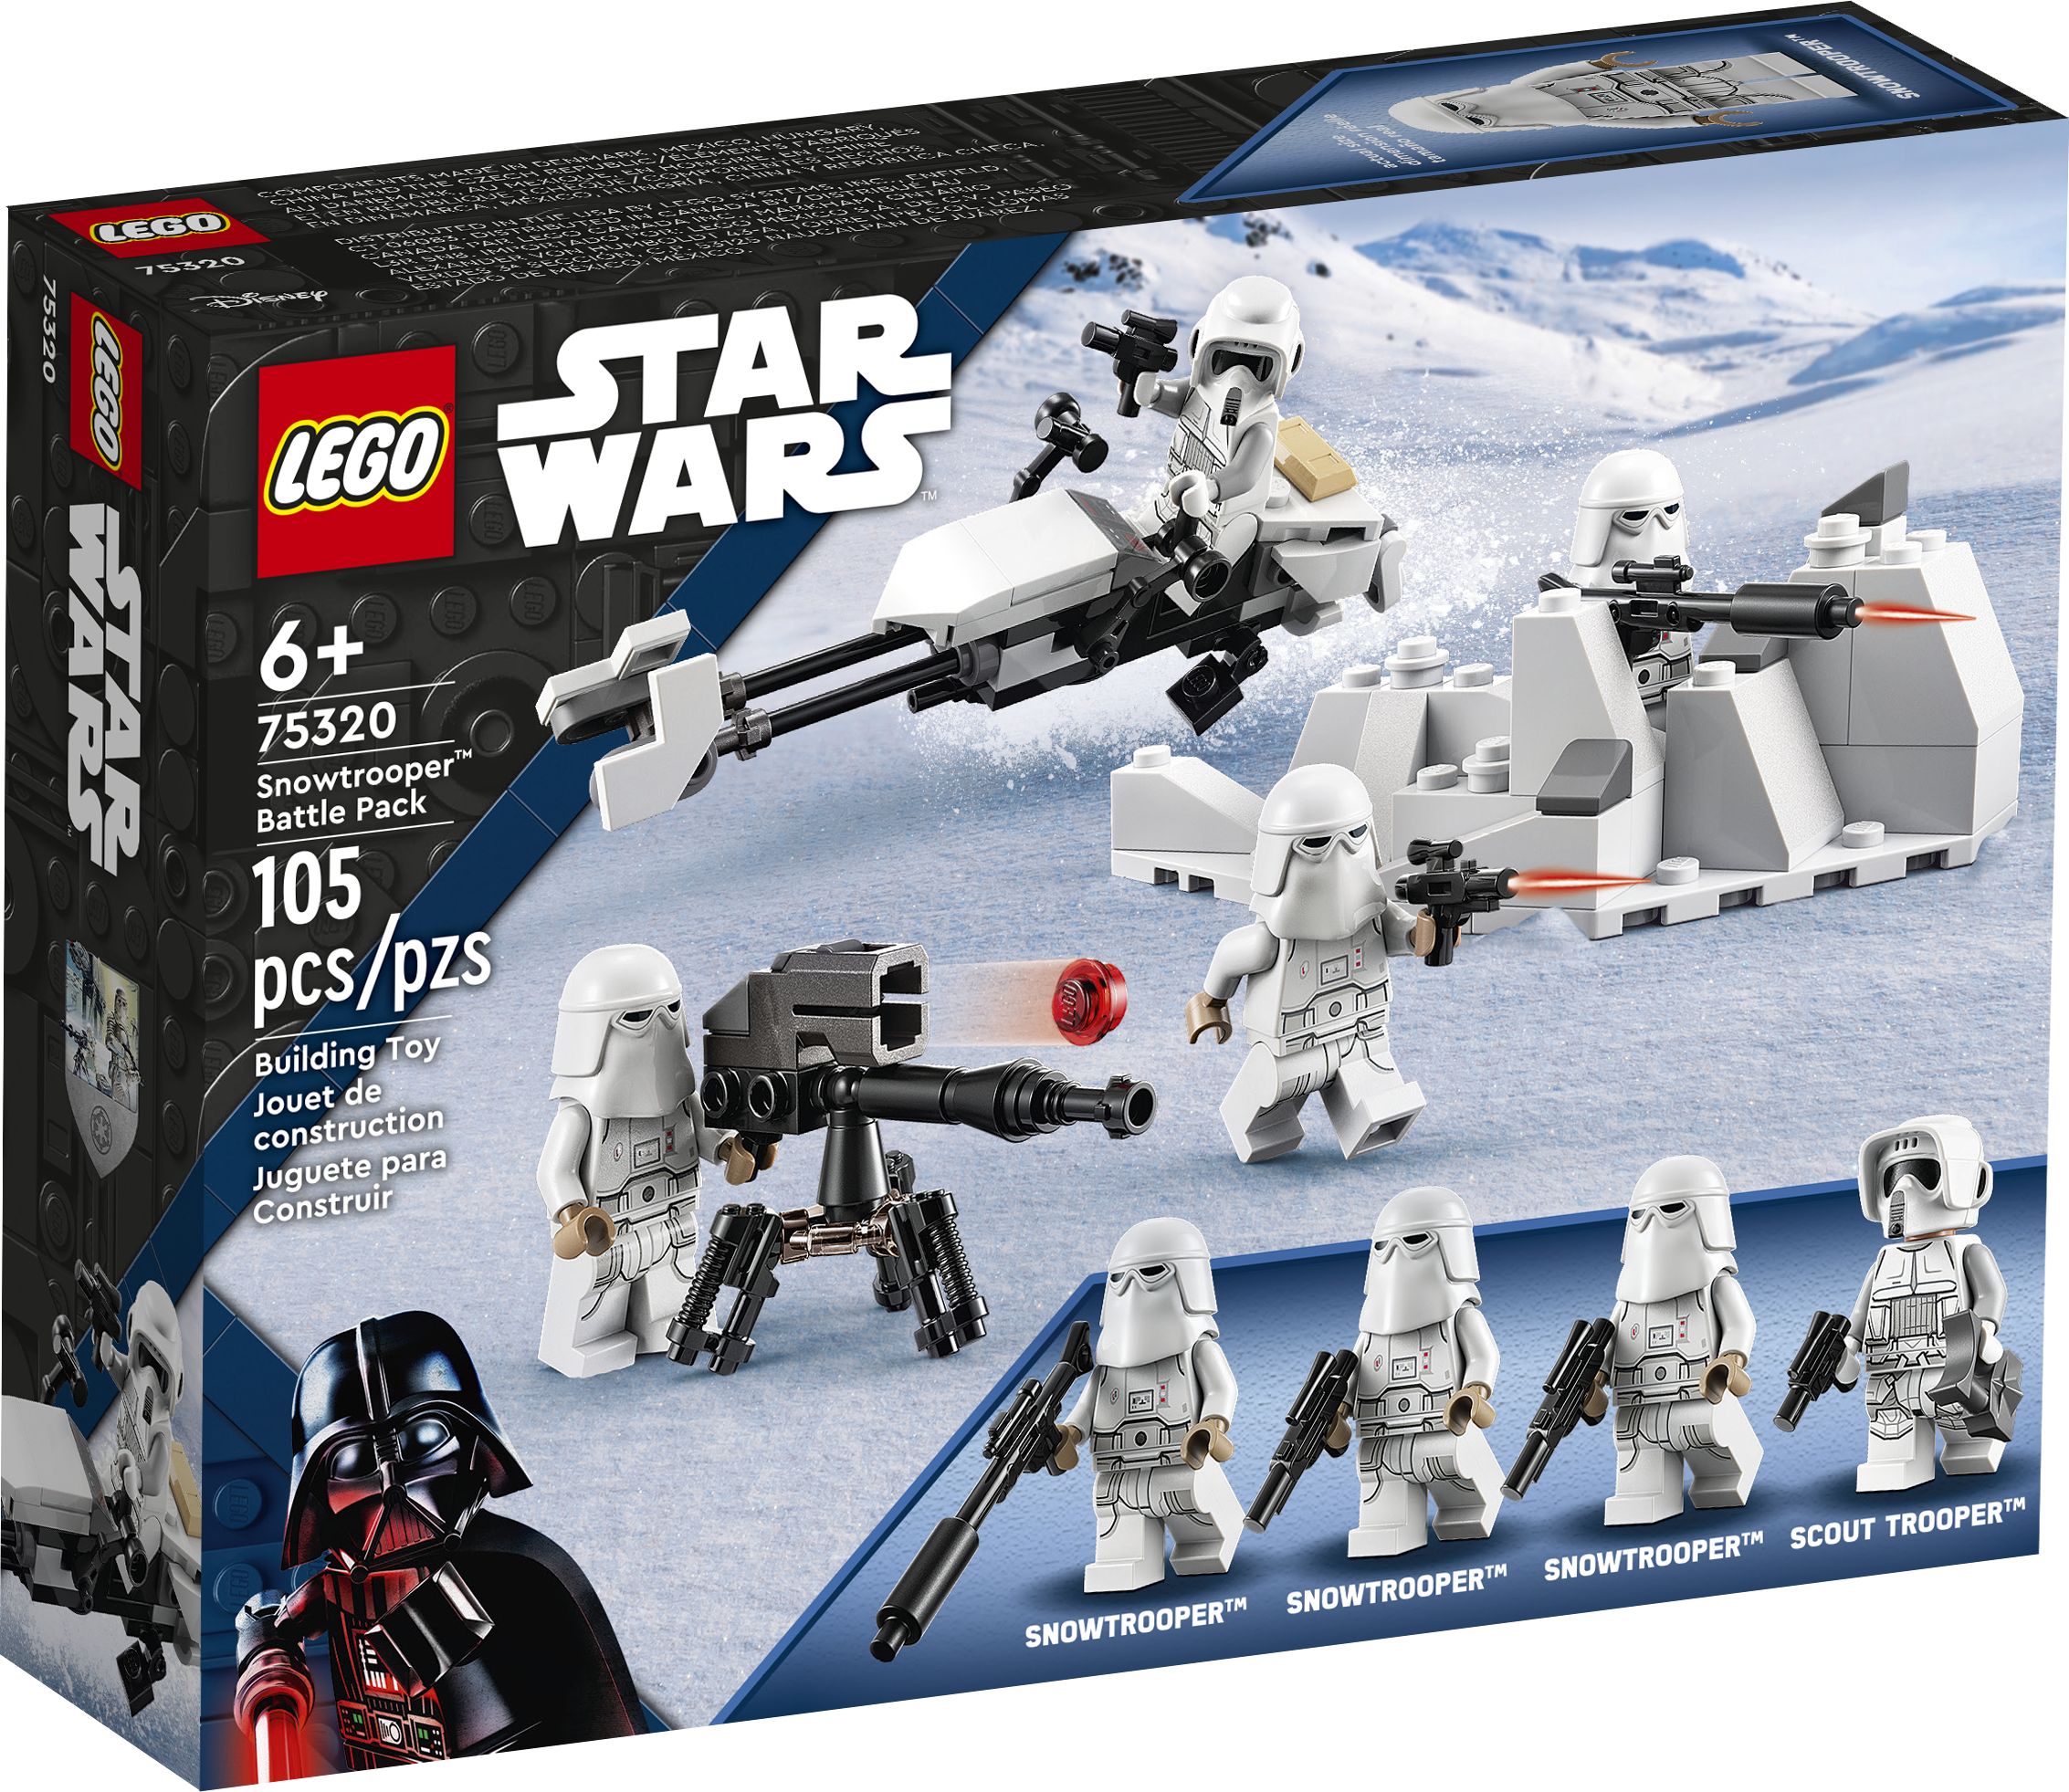 LEGO Star Wars 75320 Snowtrooper™ Battle Pack LEGO_75320_Box1_v39.jpg